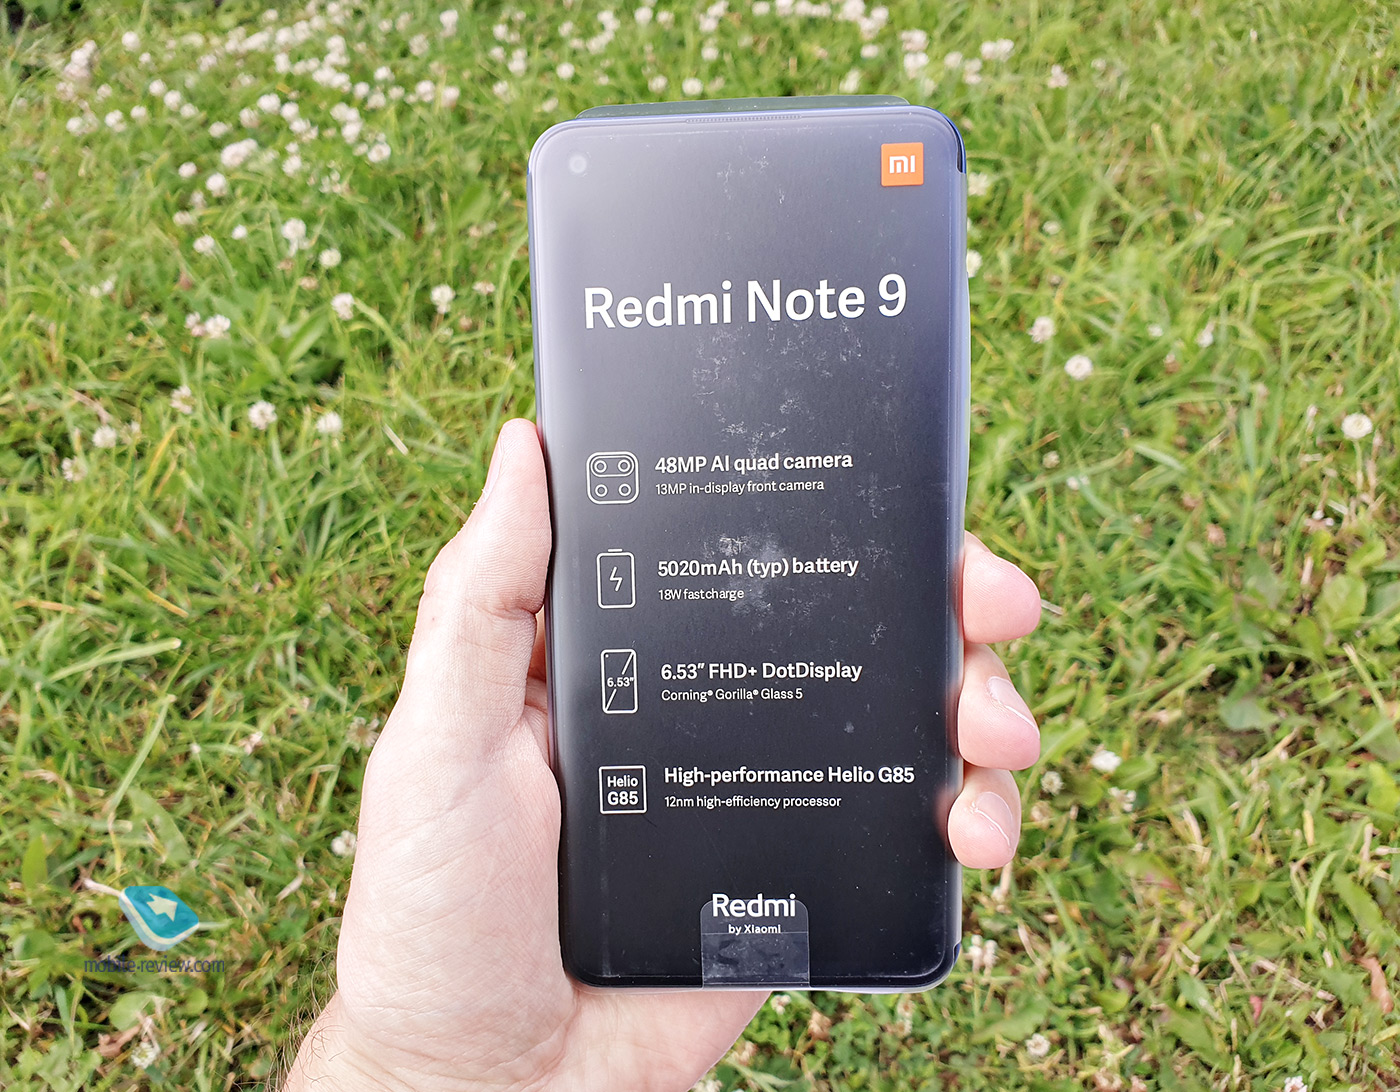  Redmi Note 9:   